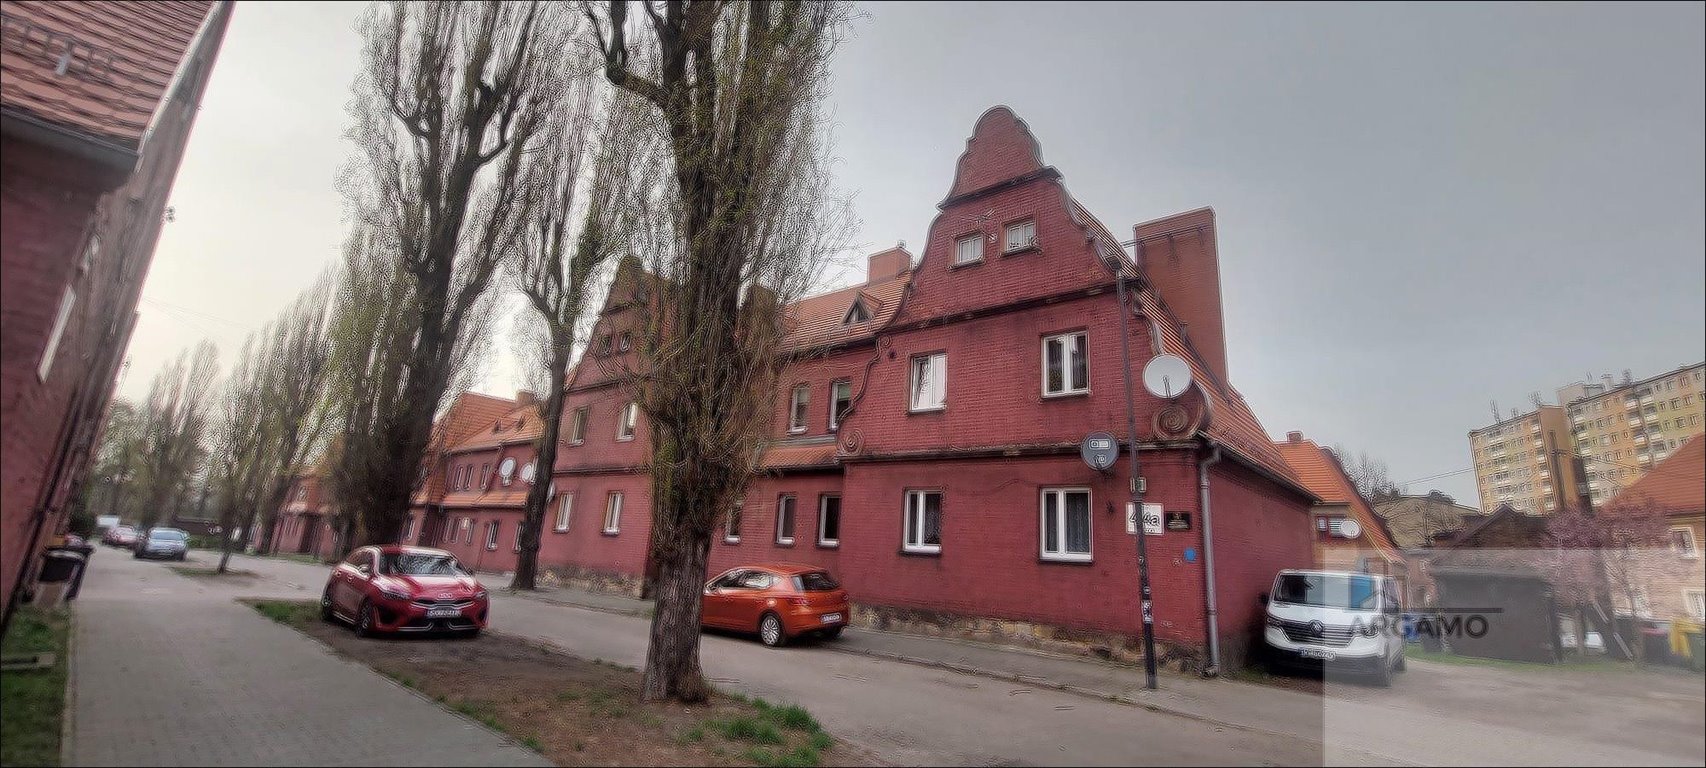 Mieszkanie dwupokojowe na sprzedaż Ruda Śląska, S. Staszica  41m2 Foto 10